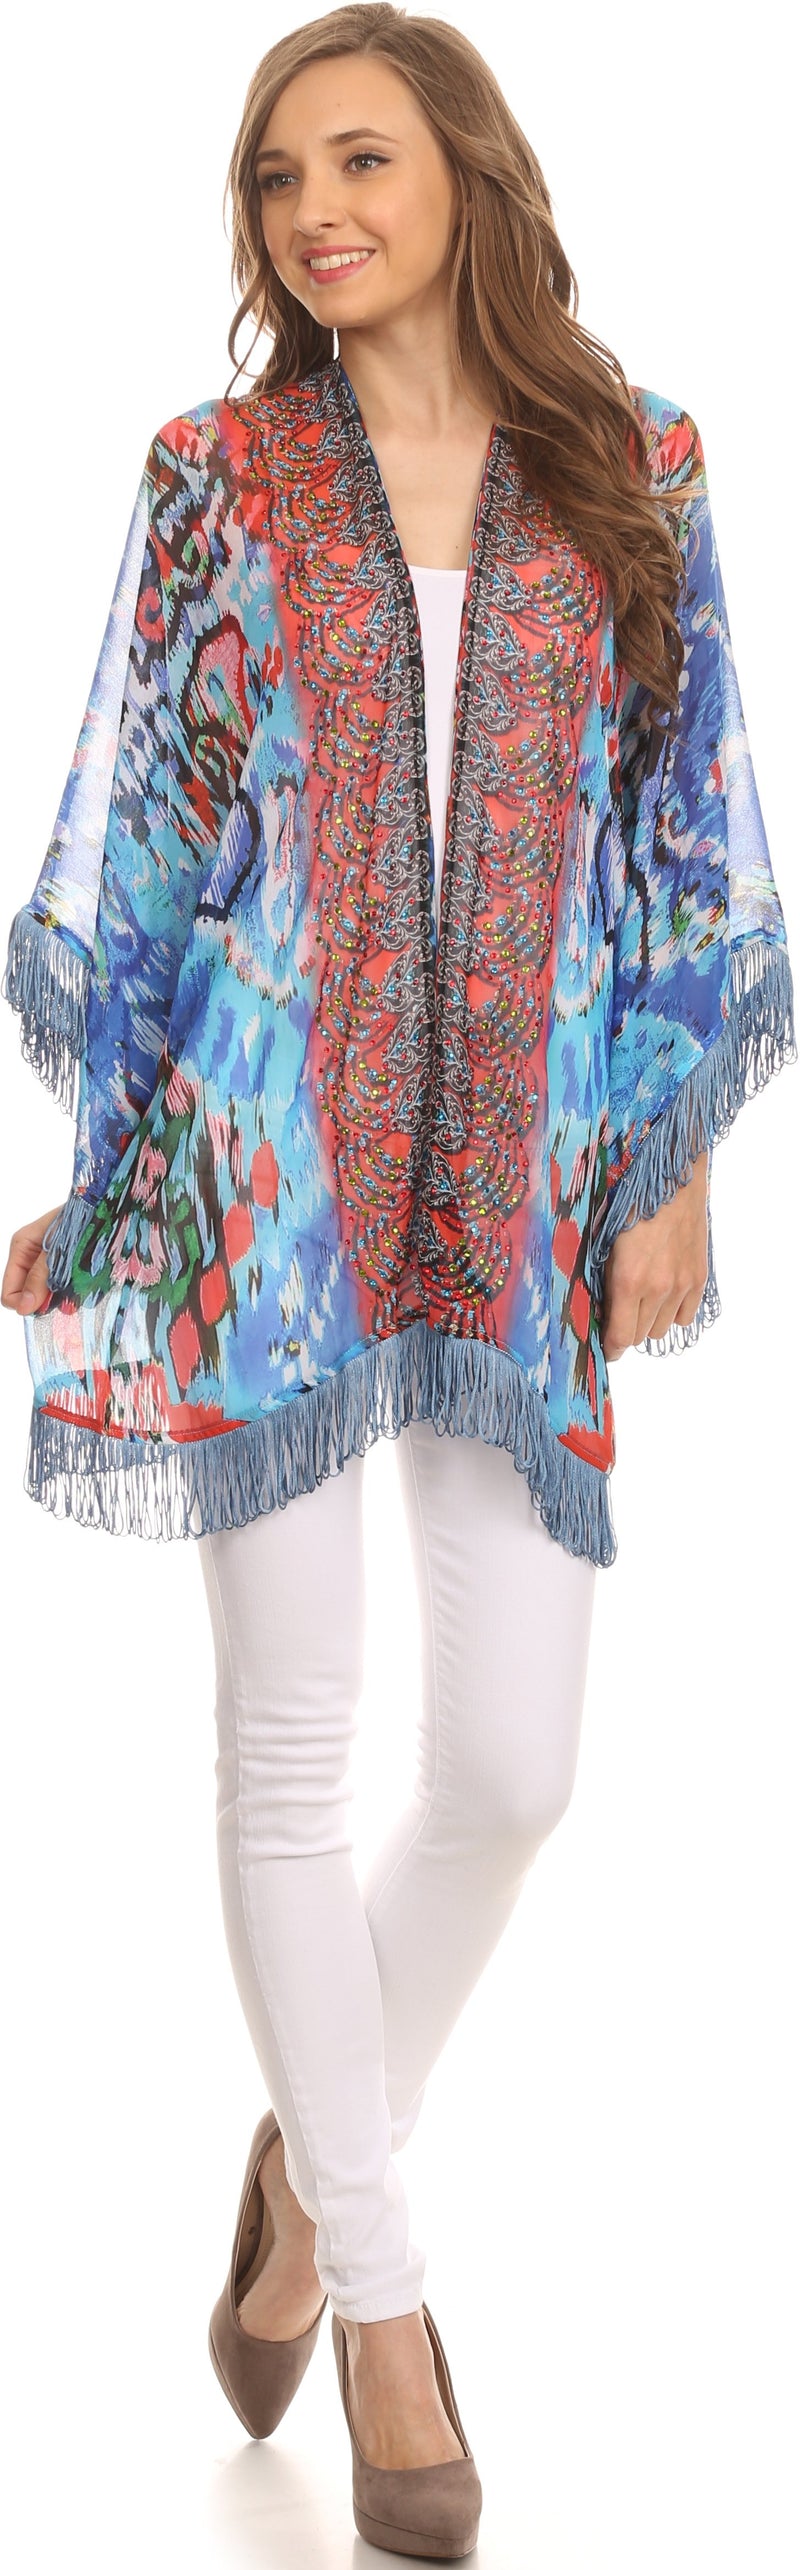 Sakkas Kimono Finley Sheer Kimono Top Cardigan Jacket With With Fringe And Design Print